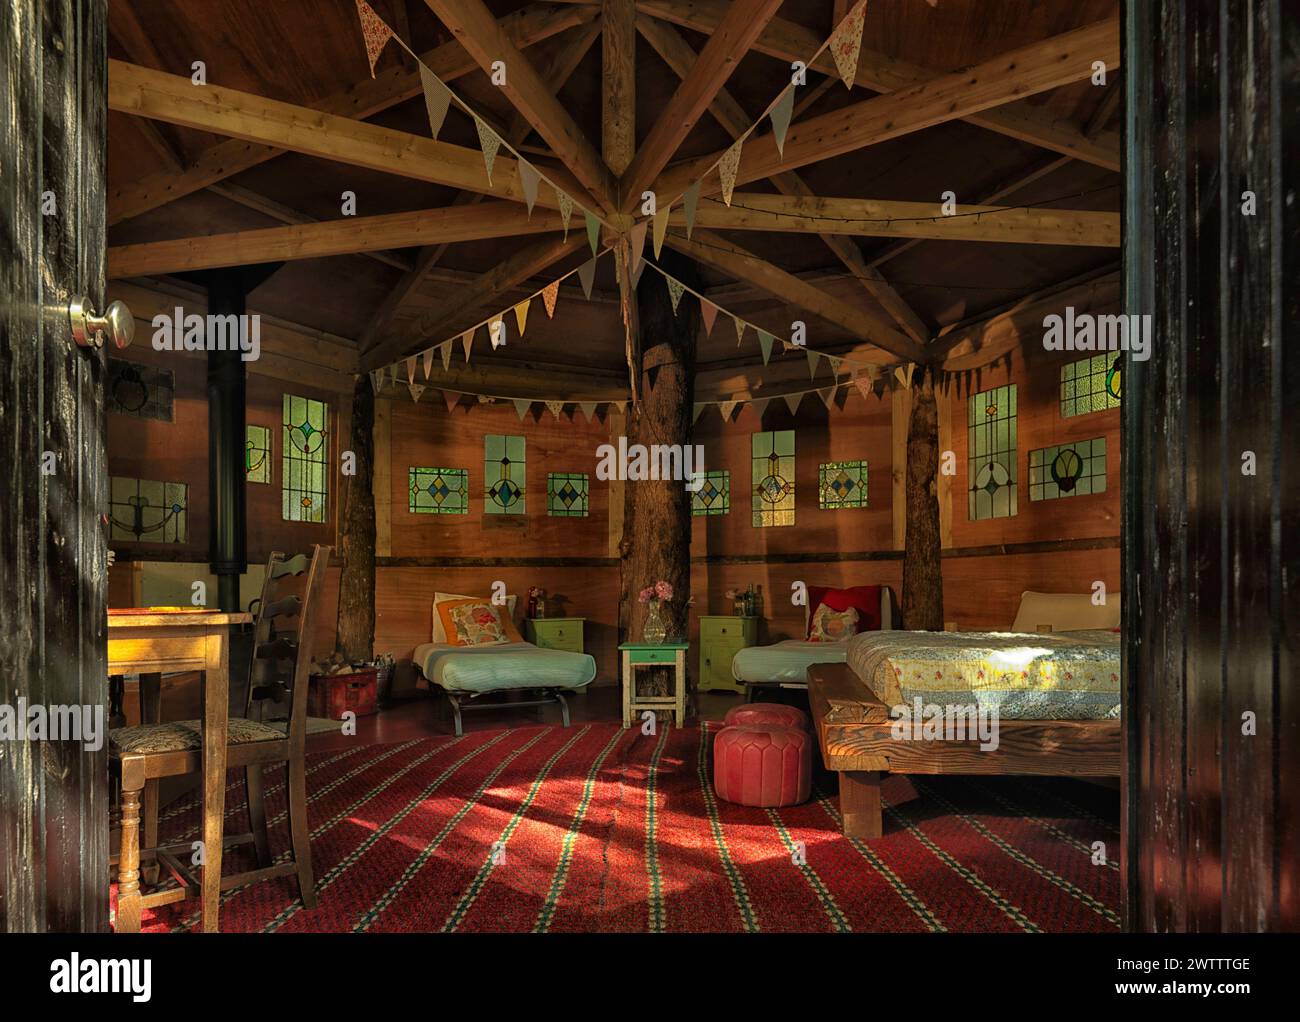 Intérieur confortable de cabine rustique avec éclairage chaleureux Banque D'Images